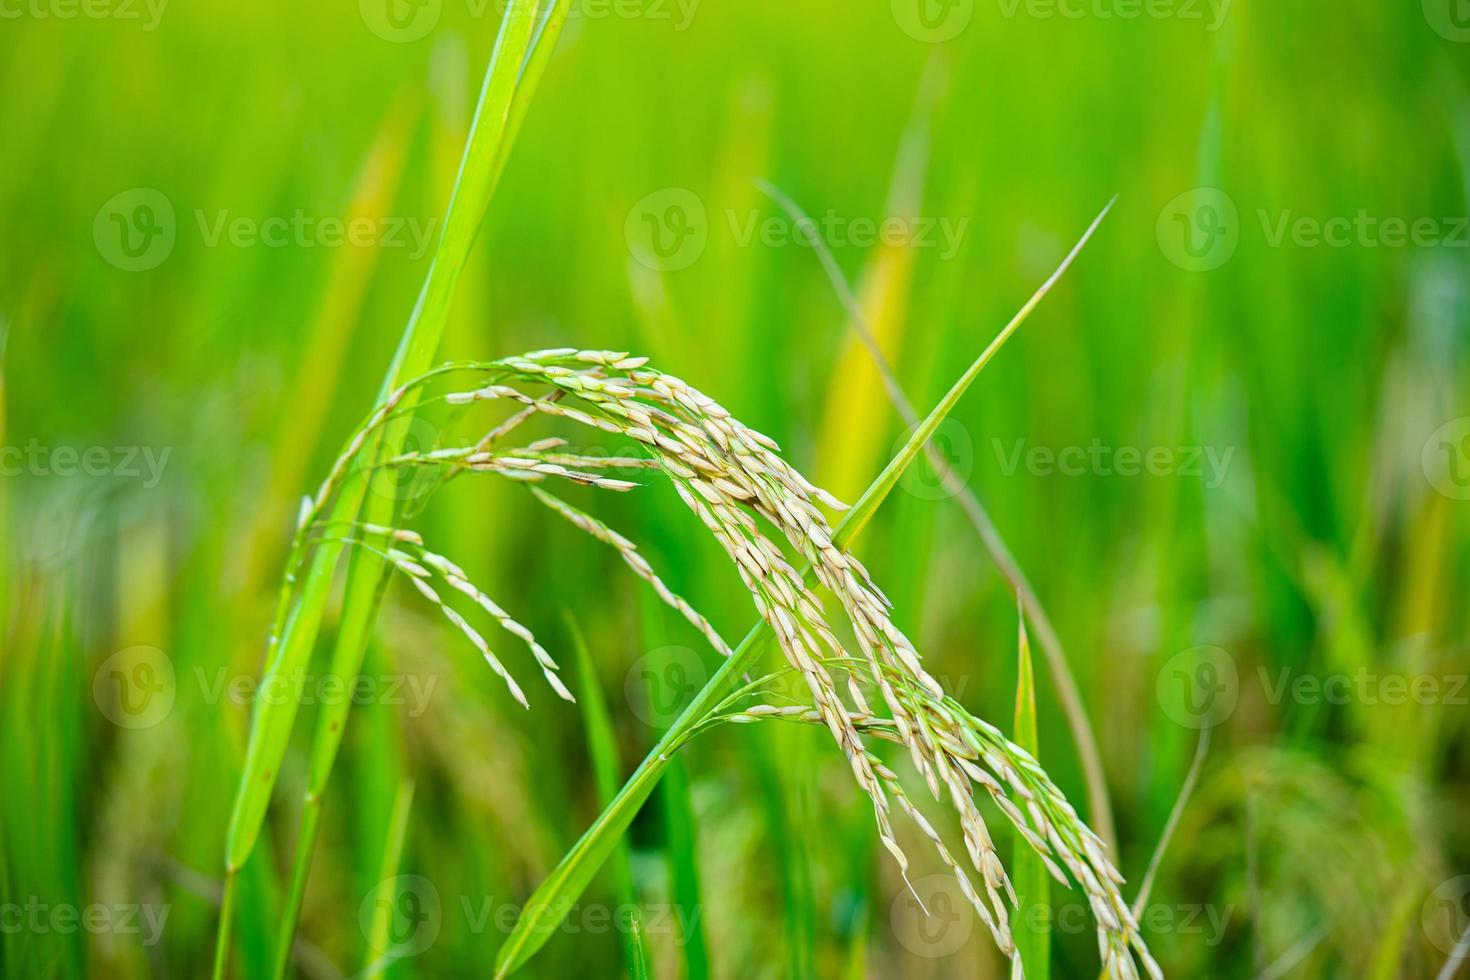 préparer du paddy ou du riz après la coupe dans le champ pour le vendre sur le marché du paddy. rizière photo